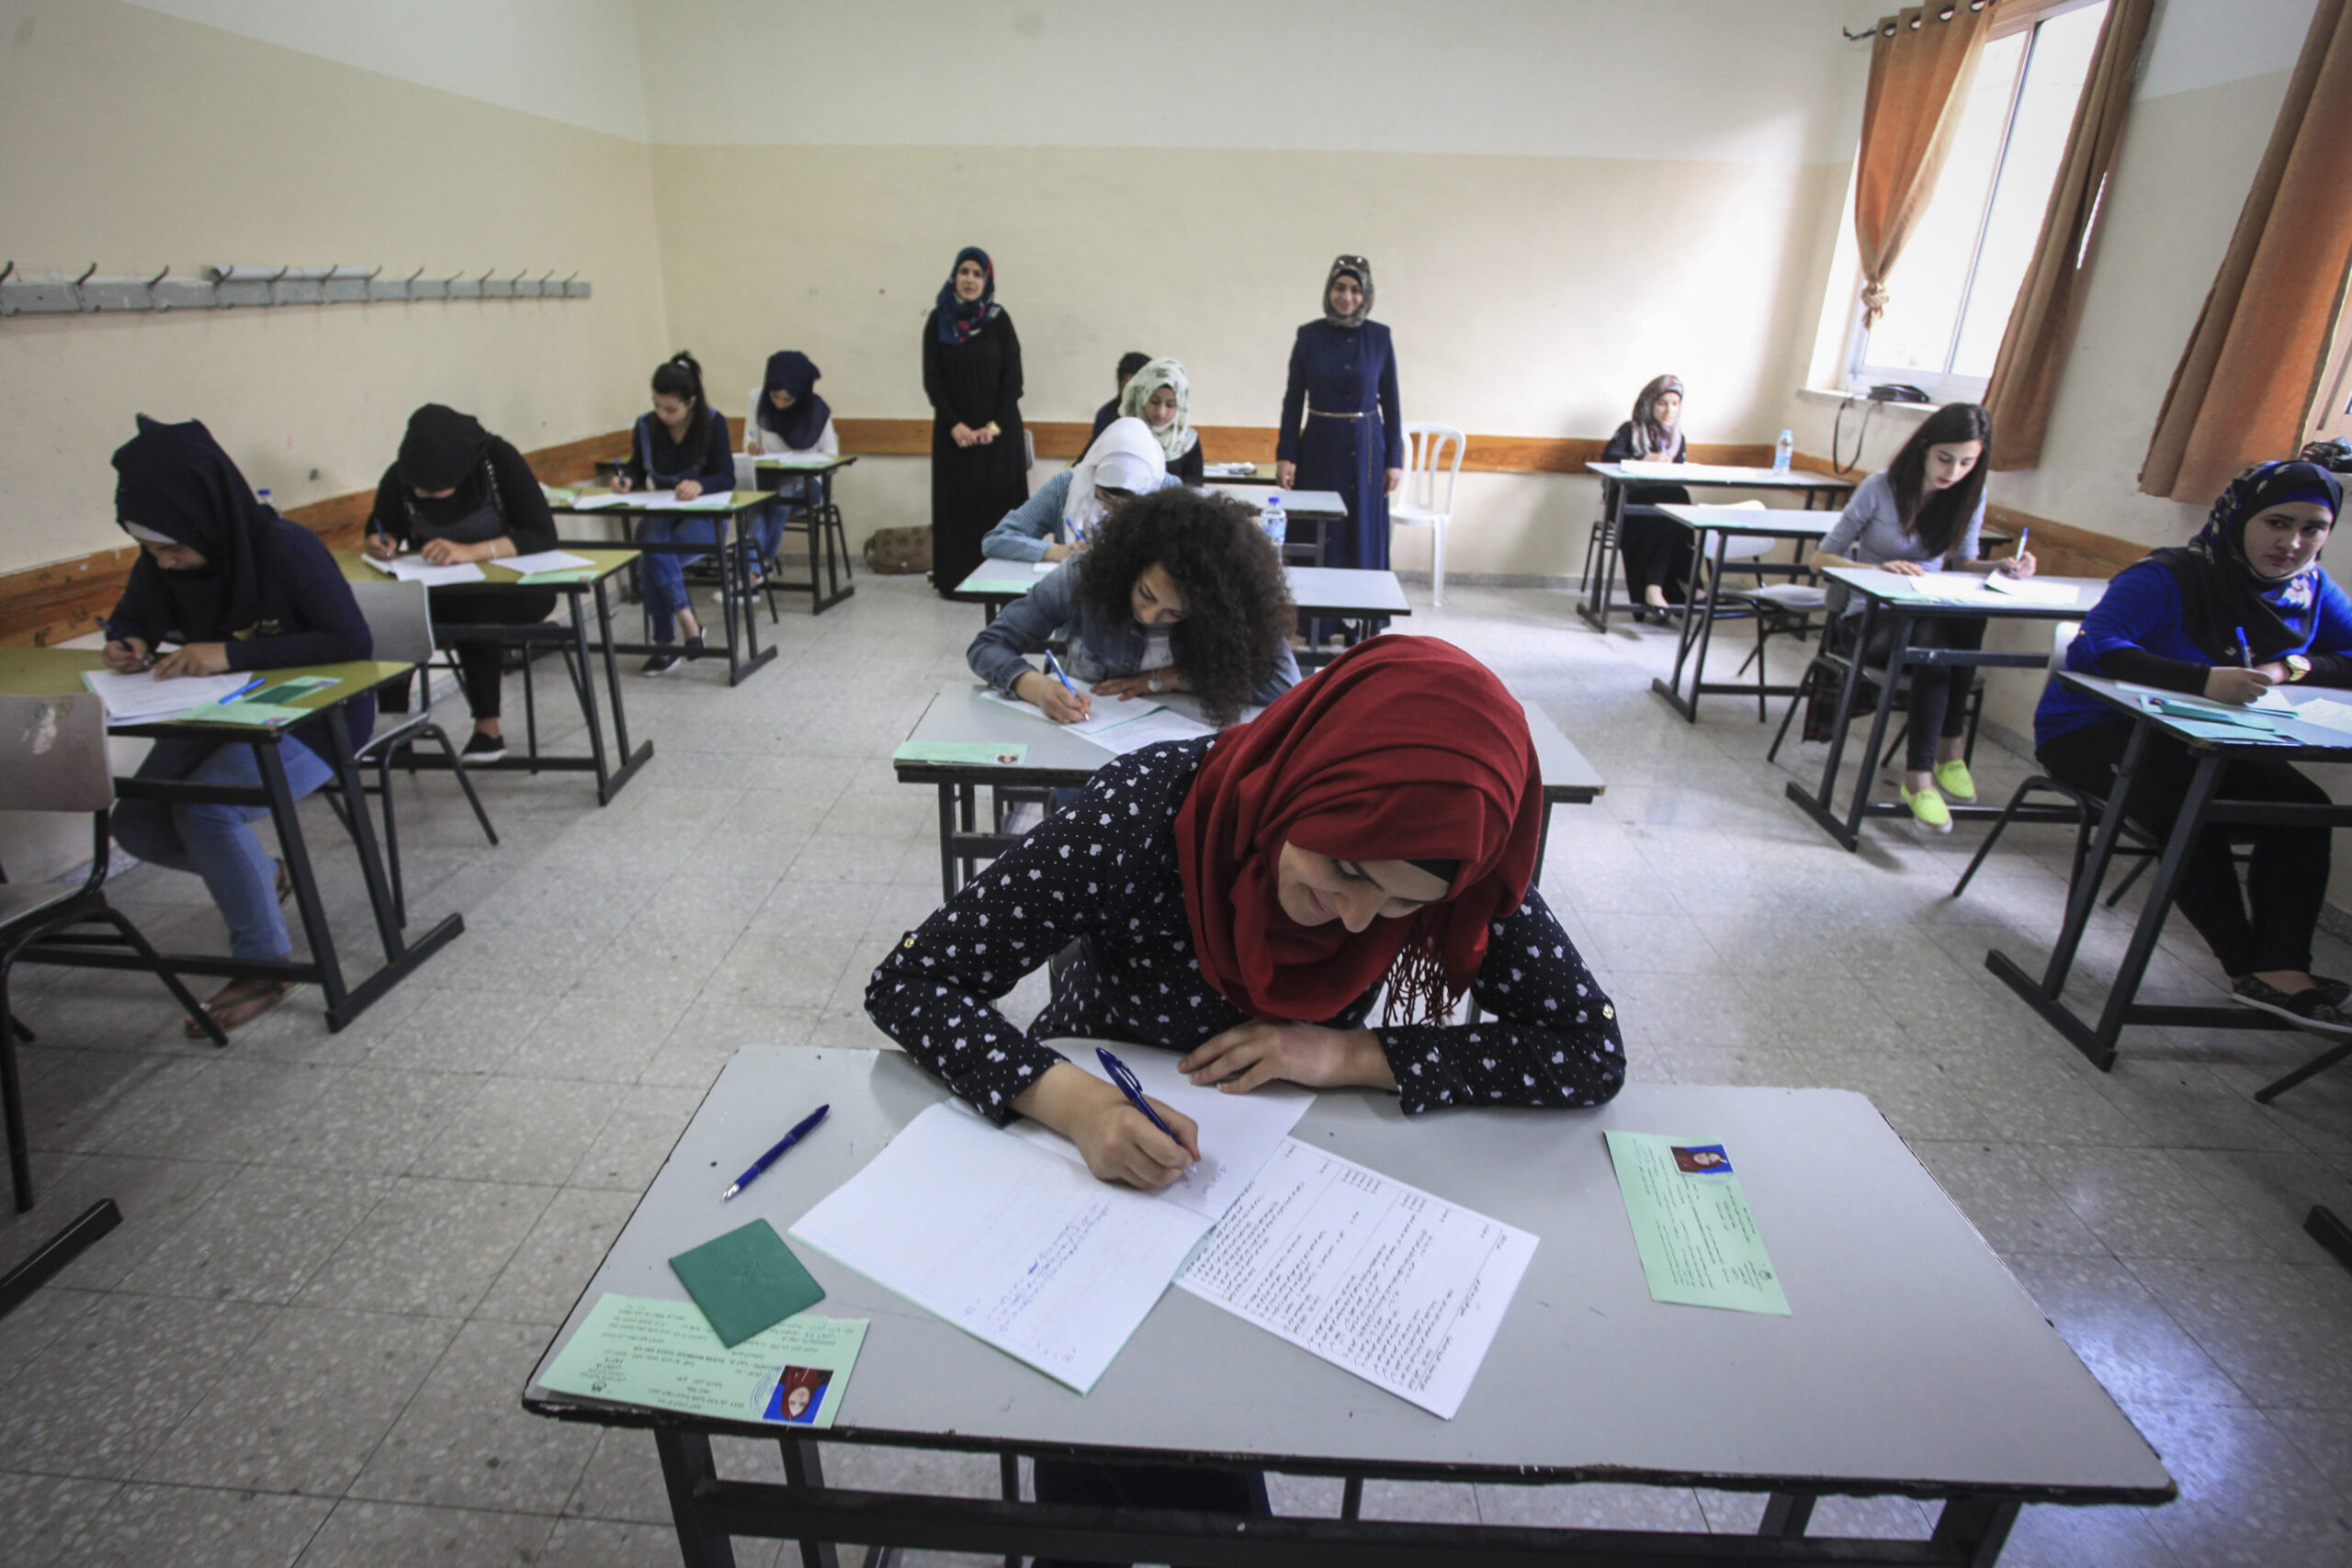 הציונים במבחן פיזה ברשות הפלסטינית נמוכים משמעותית מהממוצע במערב. תלמידים נבחנים בבגרות ברמאללה. למצולמים אין קשר לכתבה (צילום: פלאש 90) 